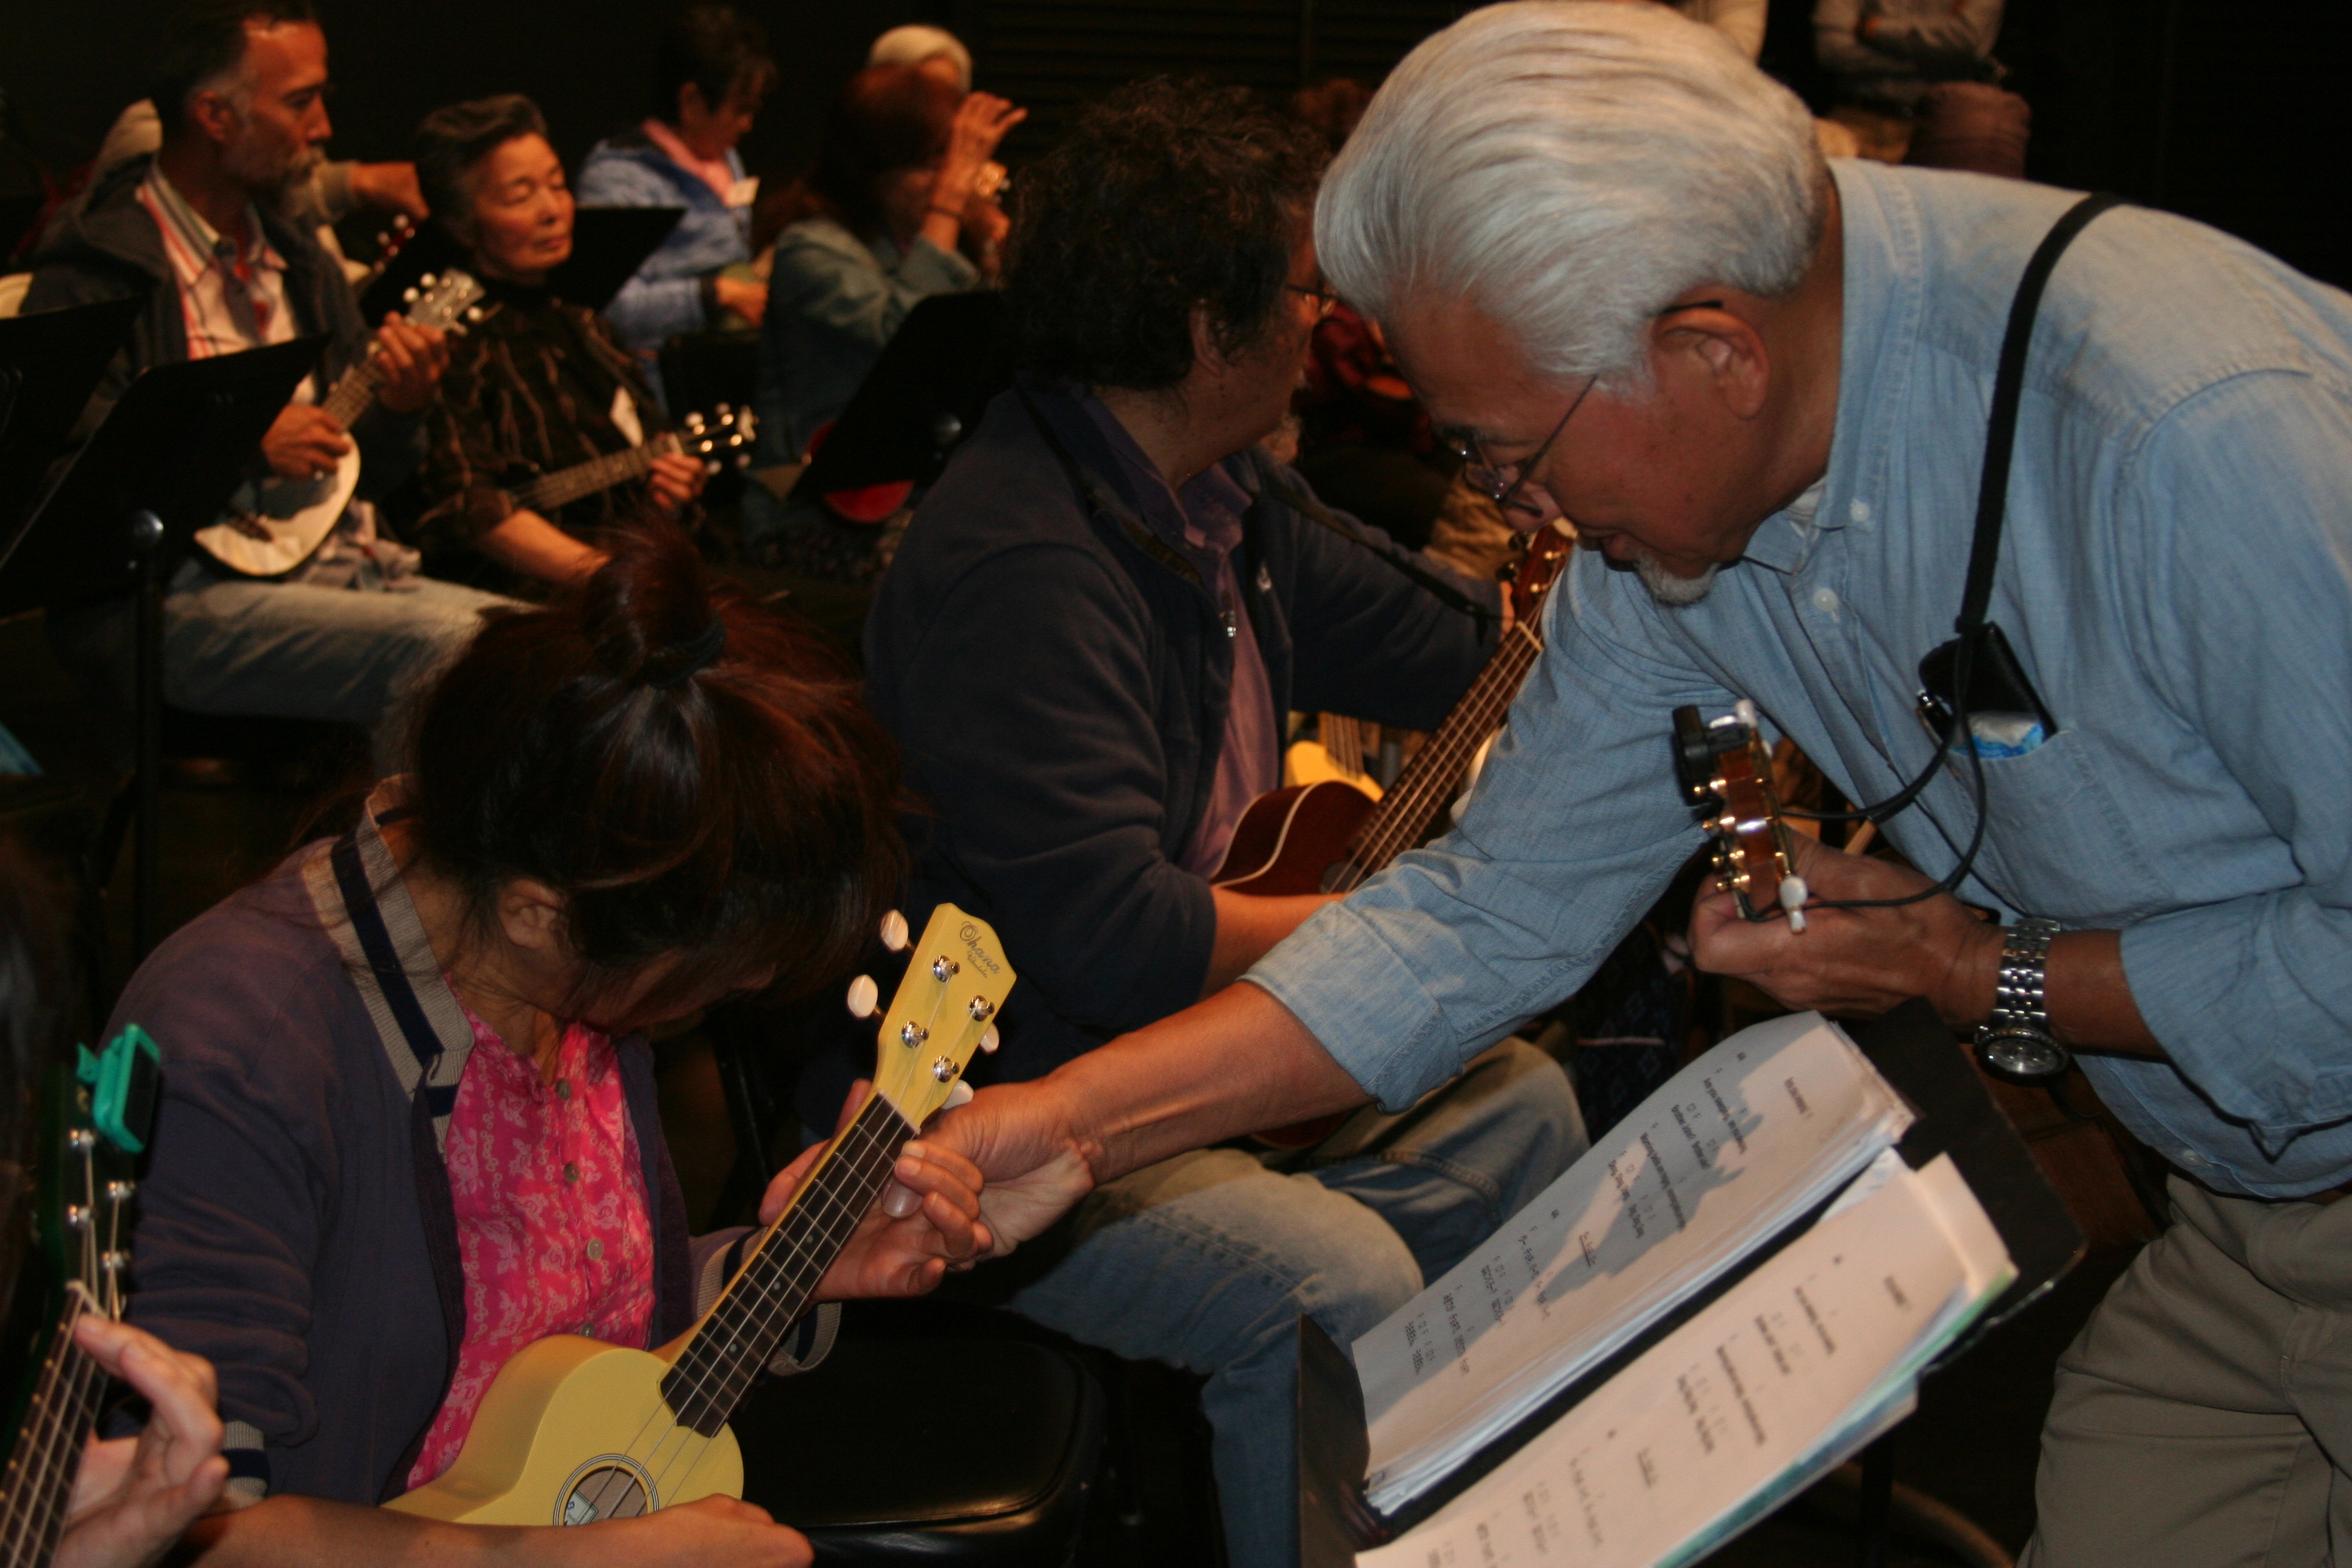 Adult man helps adult woman play ukulele